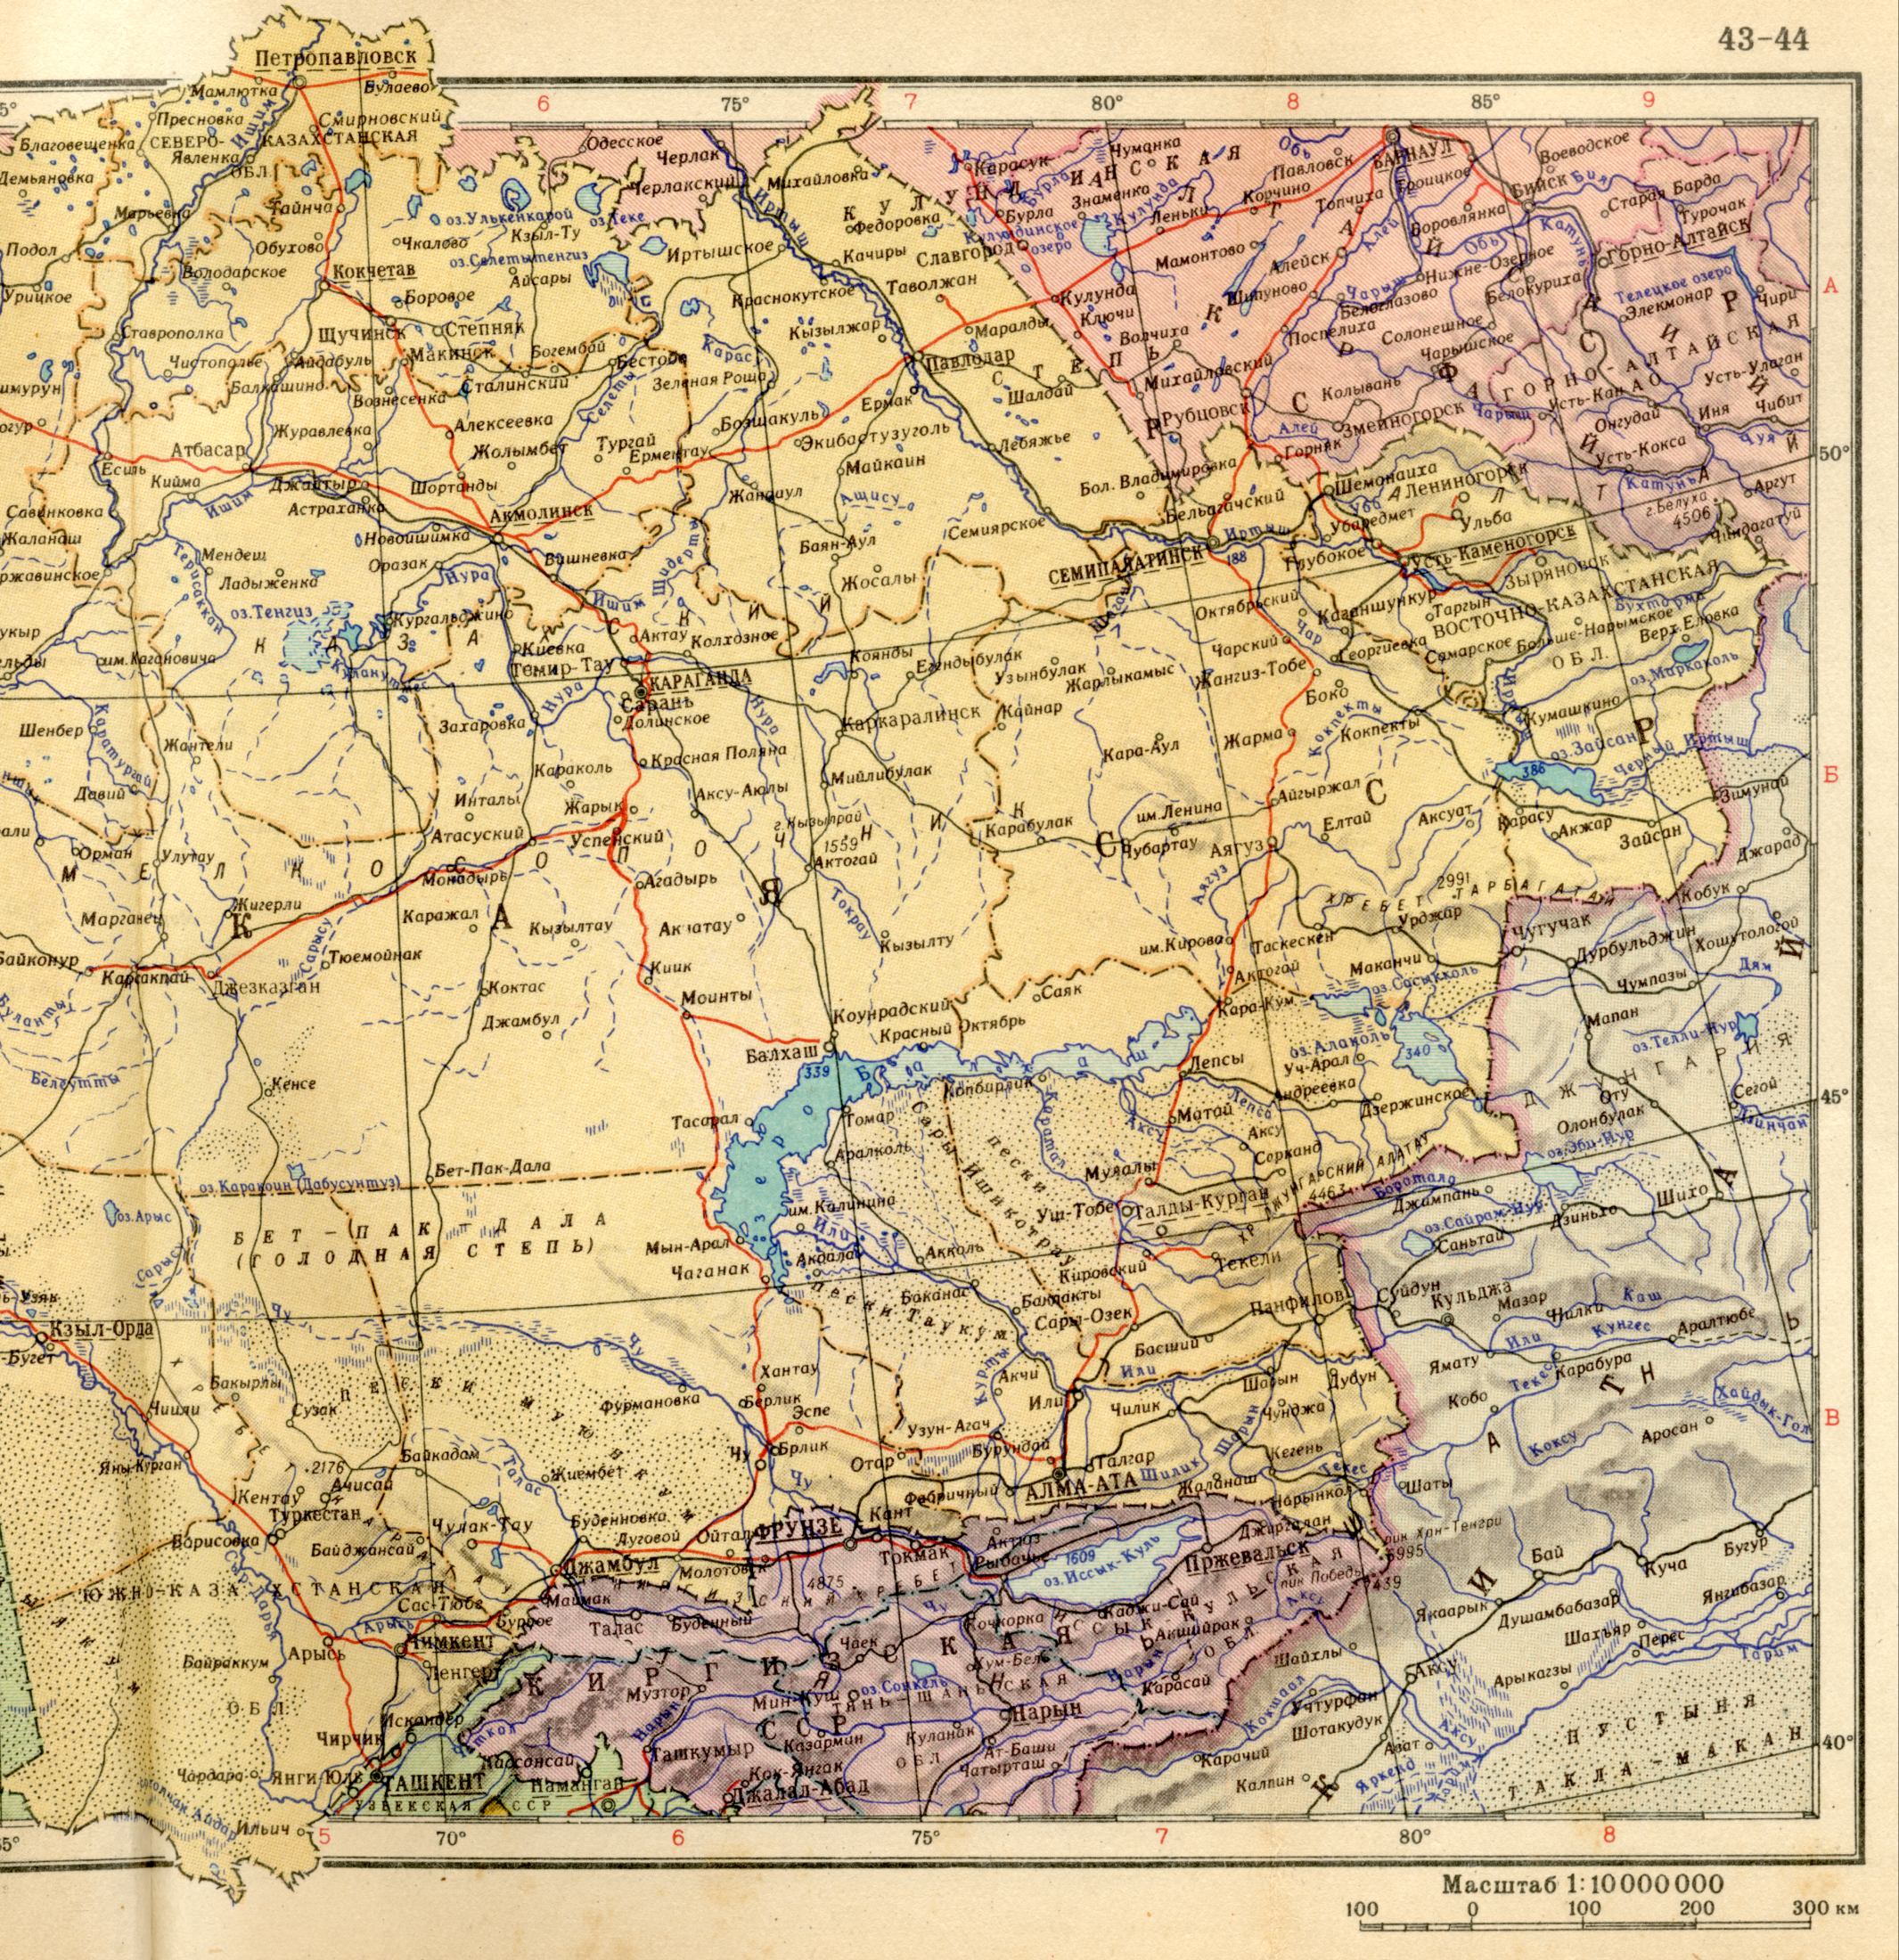 1956. Die politische Landkarte der Welt - Kasachische SSR 1956. Laden Sie eine detaillierte Karte, B0 - Balkhash